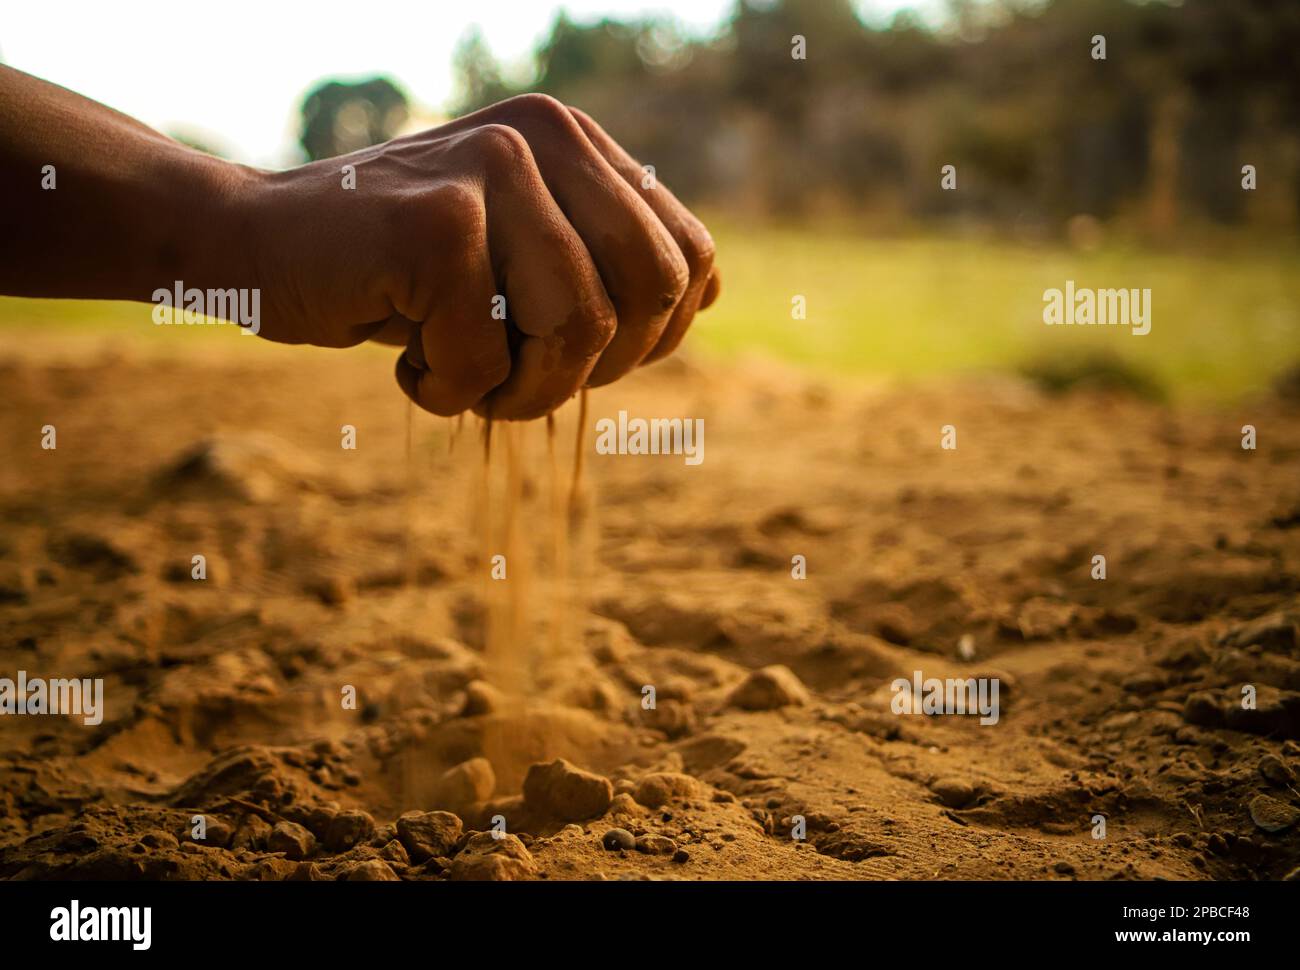 Une main est arrosée de sable dans un champ Banque D'Images